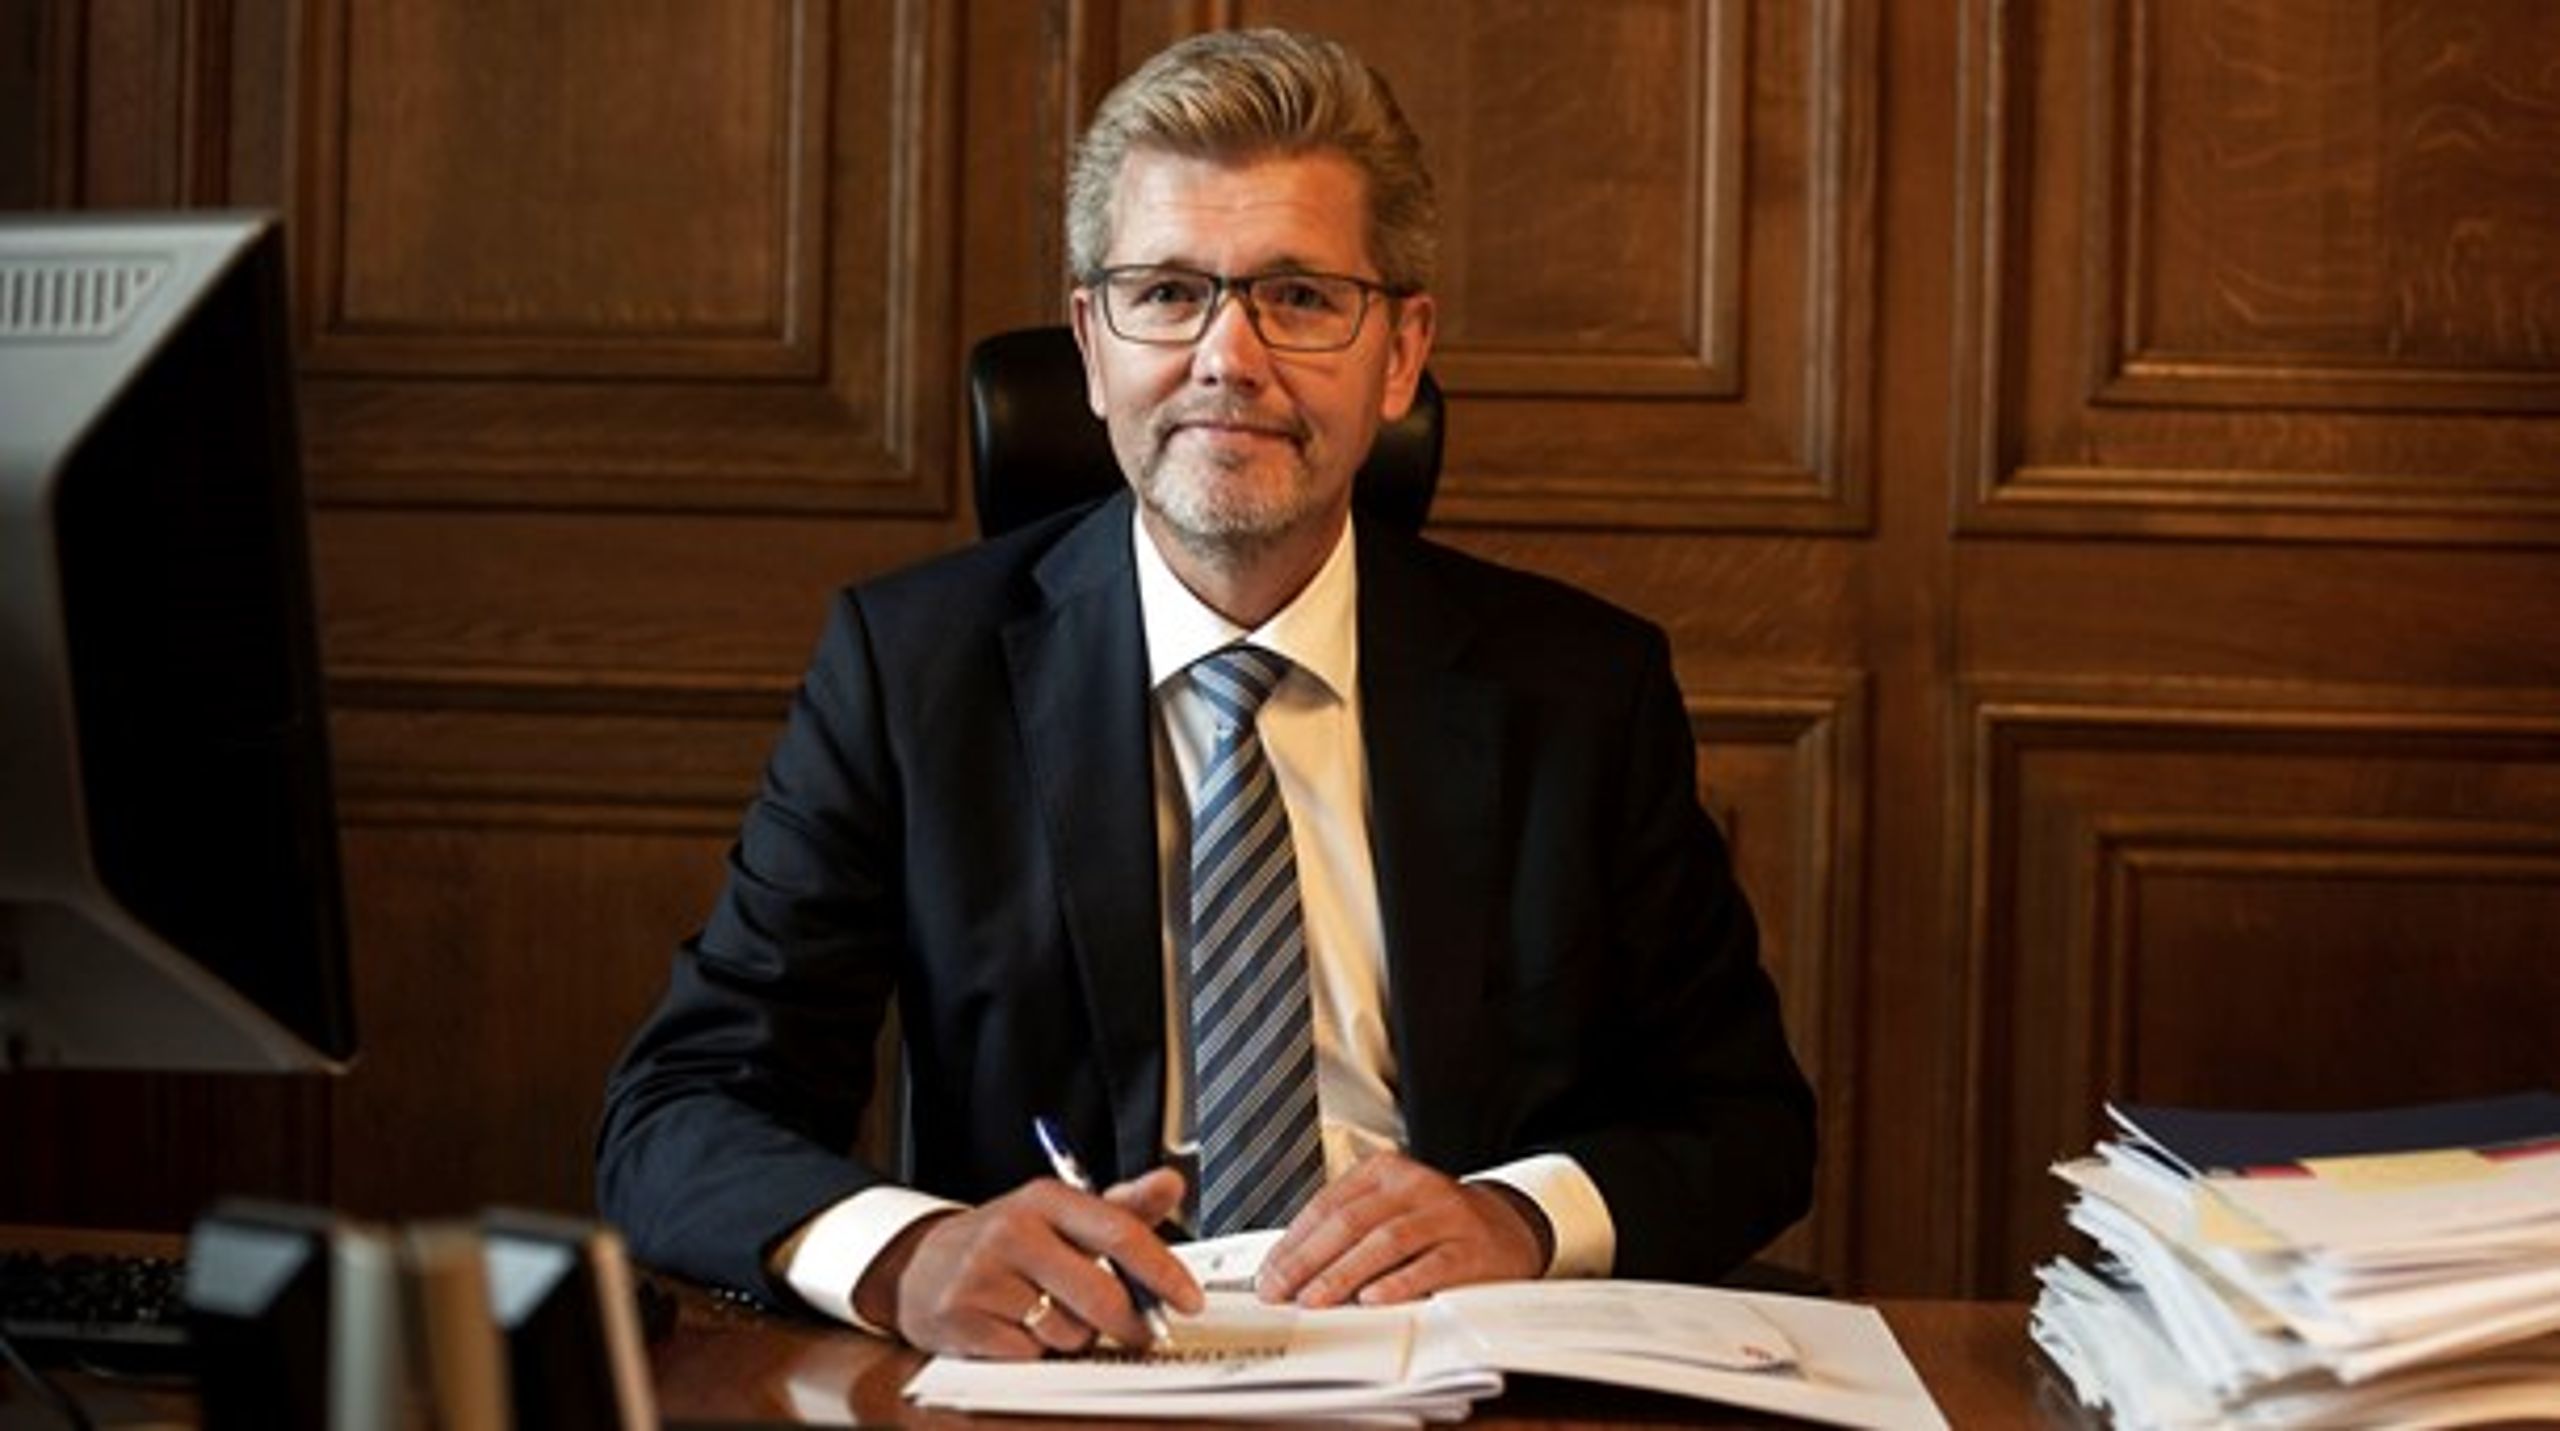 Københavns overborgmester Frank Jensen (S) har ikke tænkt sig at bruge kommunens 11 mia. kr. store opsparing til at finansiere&nbsp;skattelettelser. Af flere grunde.